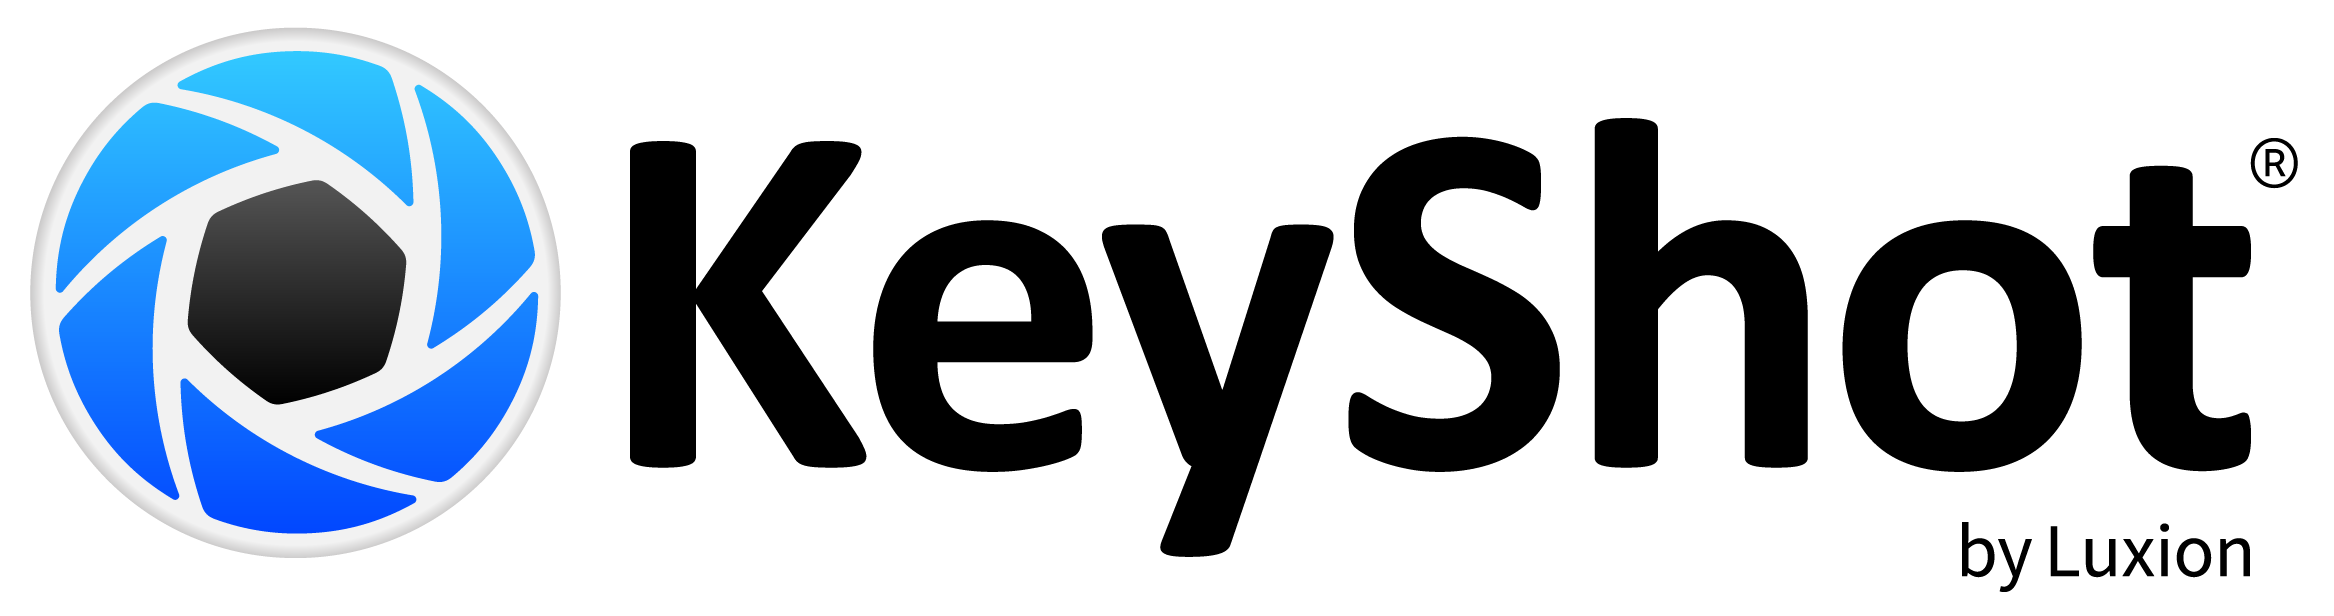 לוגו תוכנת KeyShot